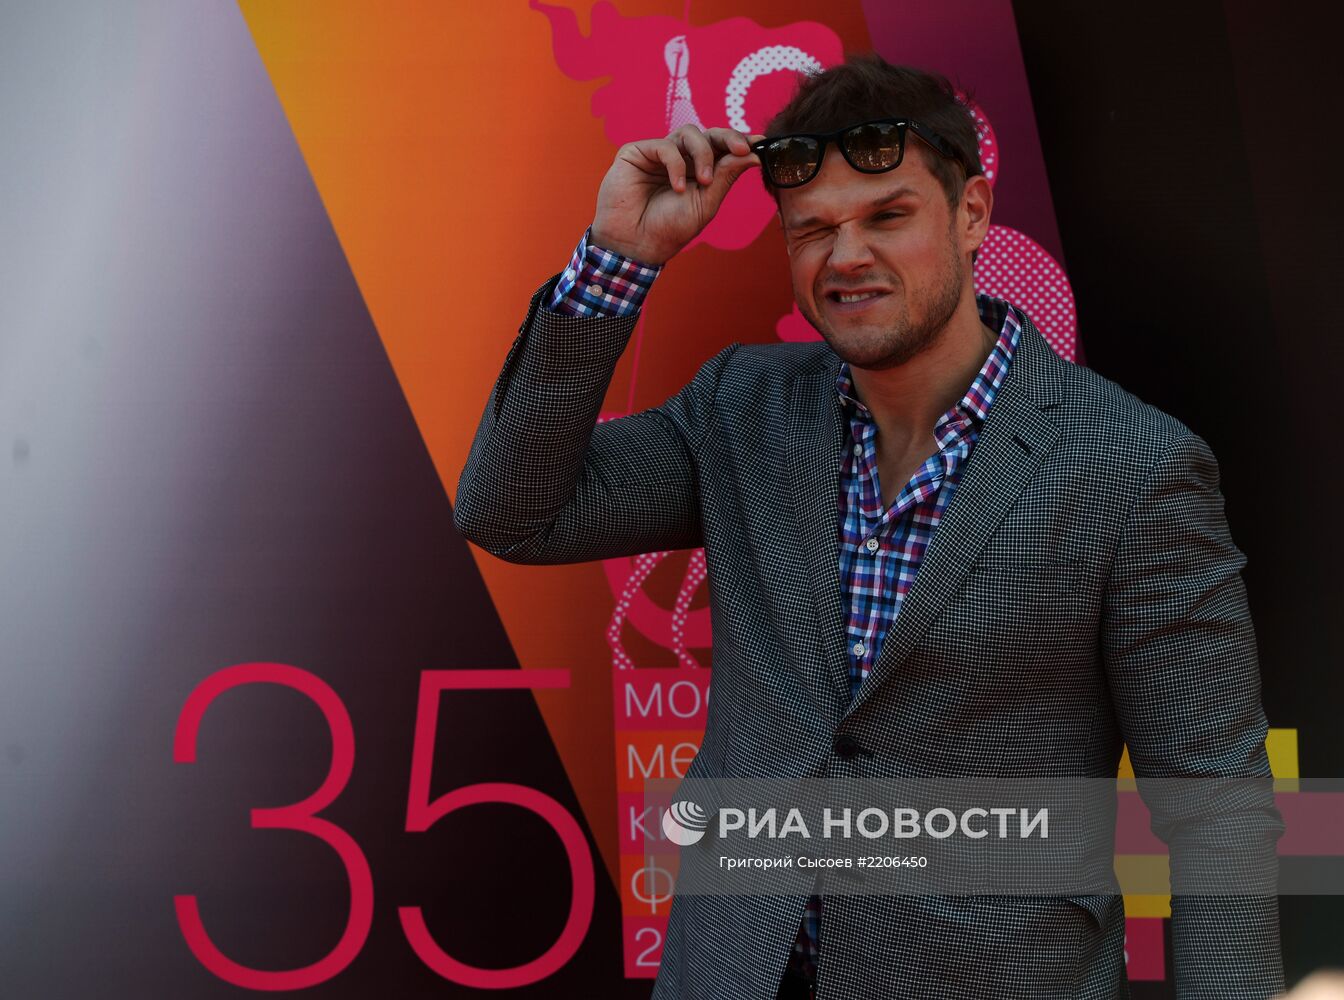 Московский Международный Кинофестиваль. Церемония открытия